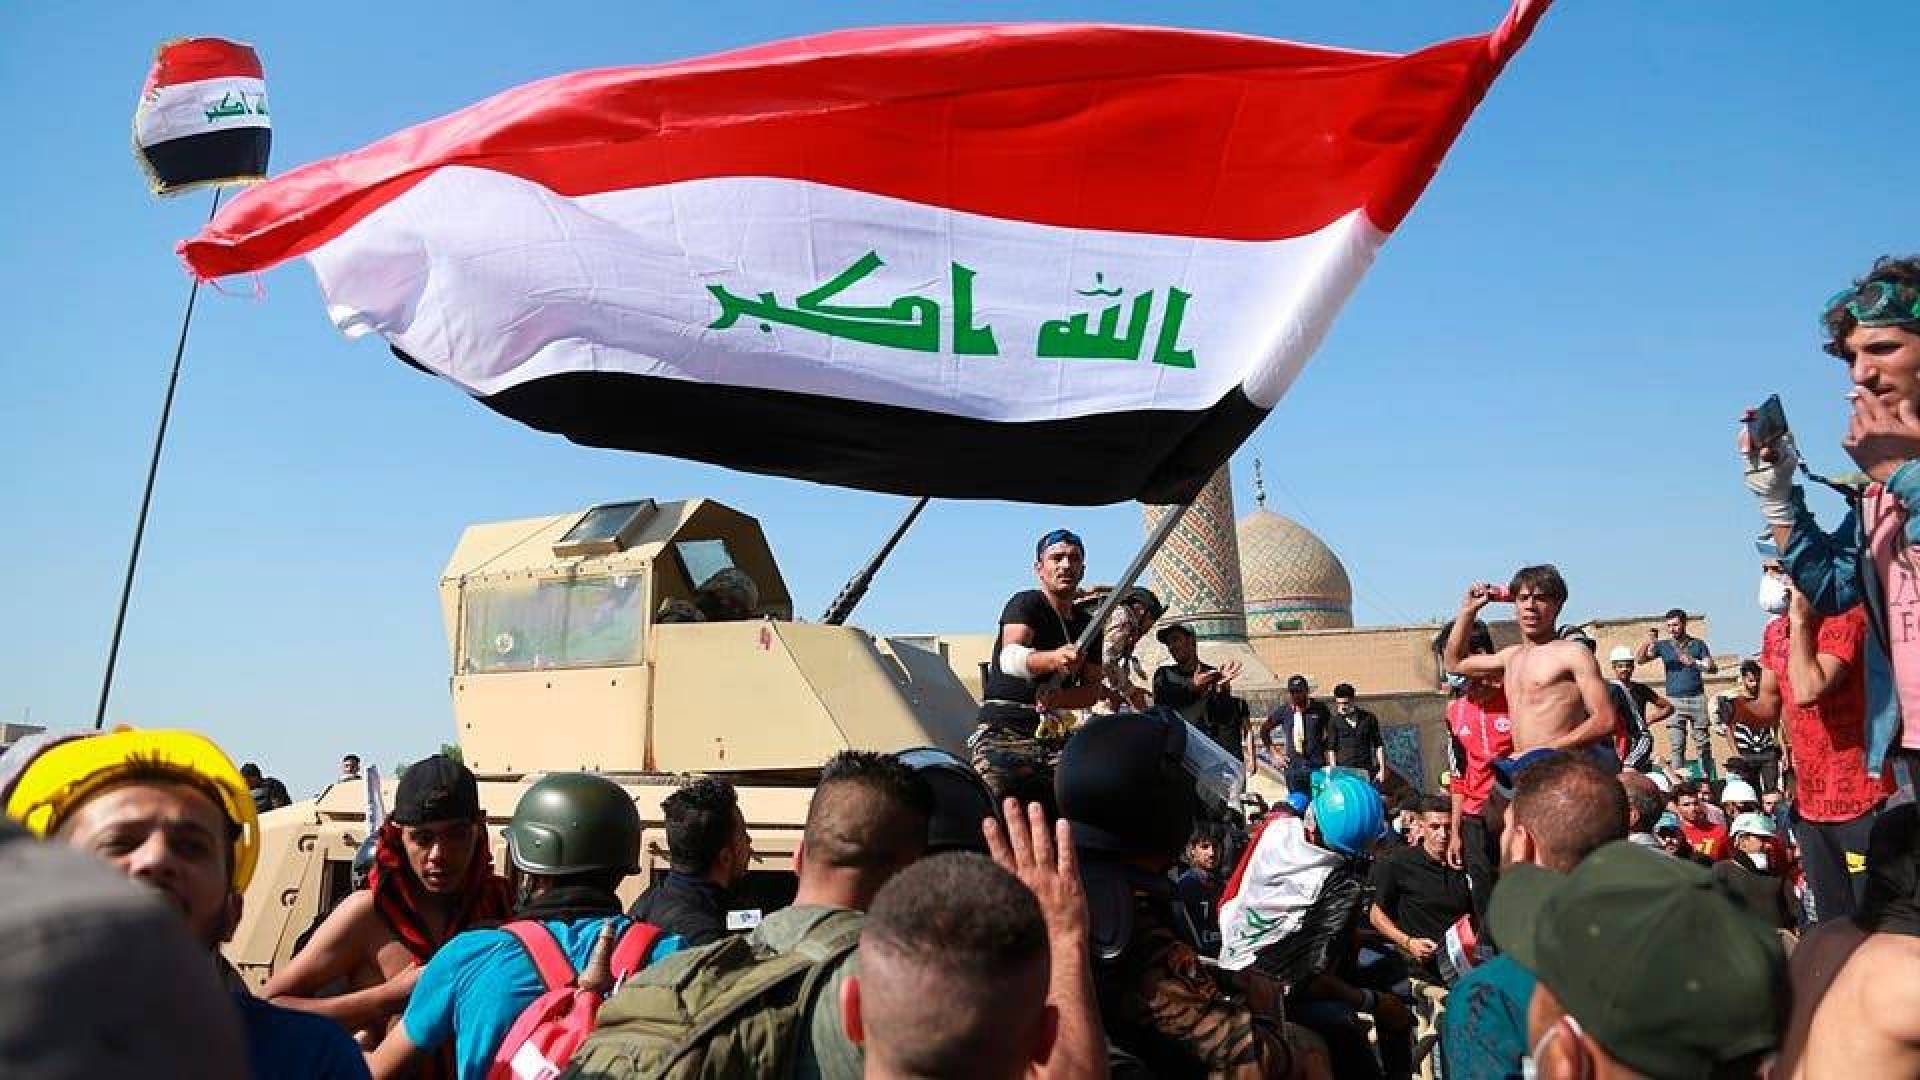 القوات المسلحة العراقية تتهم مجموعات بتصنيع مواد متفجرة في مبنى المطعم التركي  